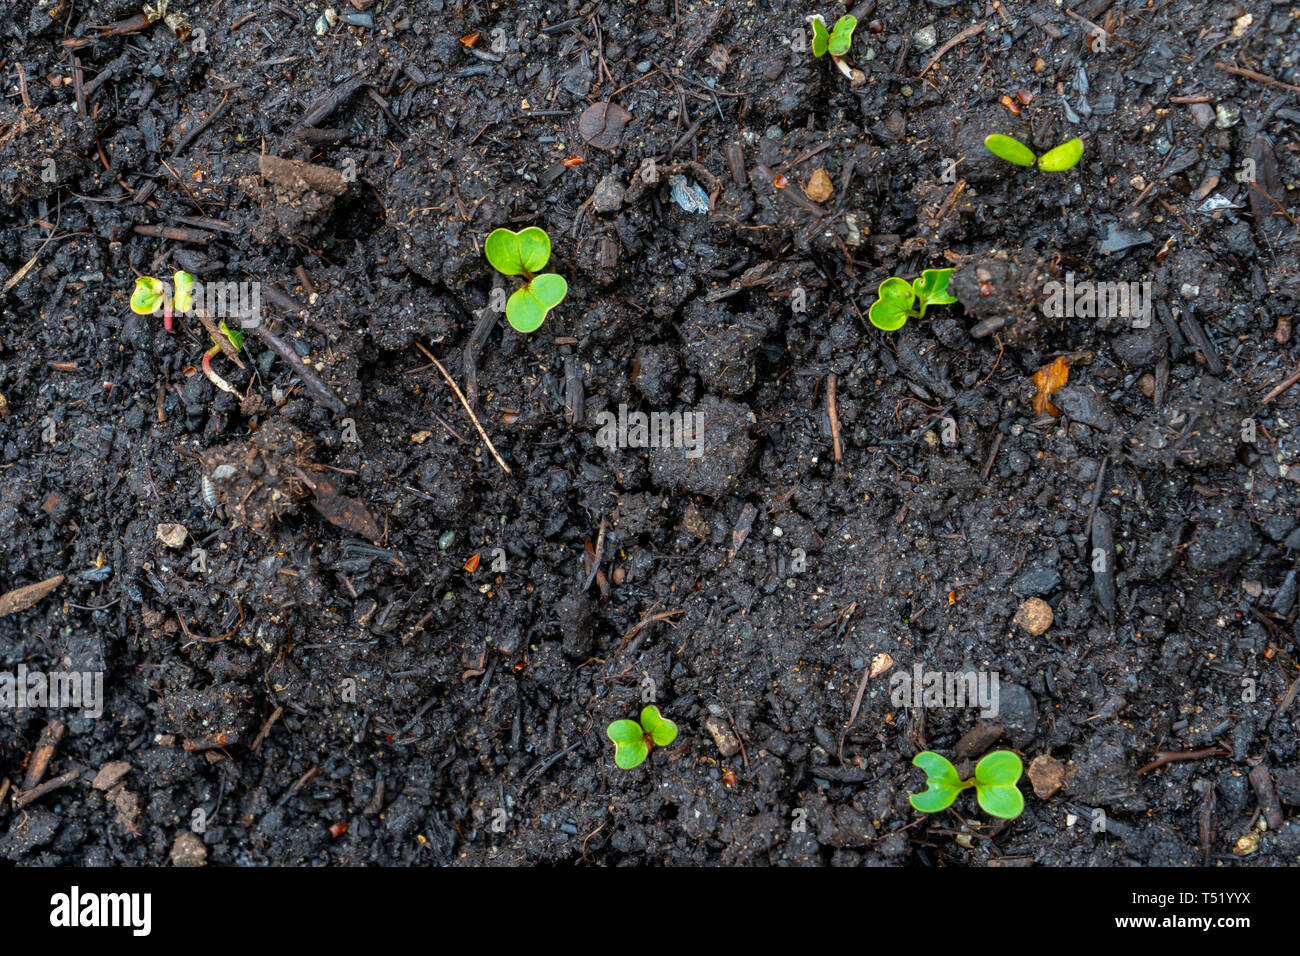 Radieschen Sämling Sprossen (schießt) aus dunklen Kompost Boden wachsen in einem echten Garten, im frühen Frühling. Zeigt helle grüne Blätter und einige rote Stiele. Stockfoto